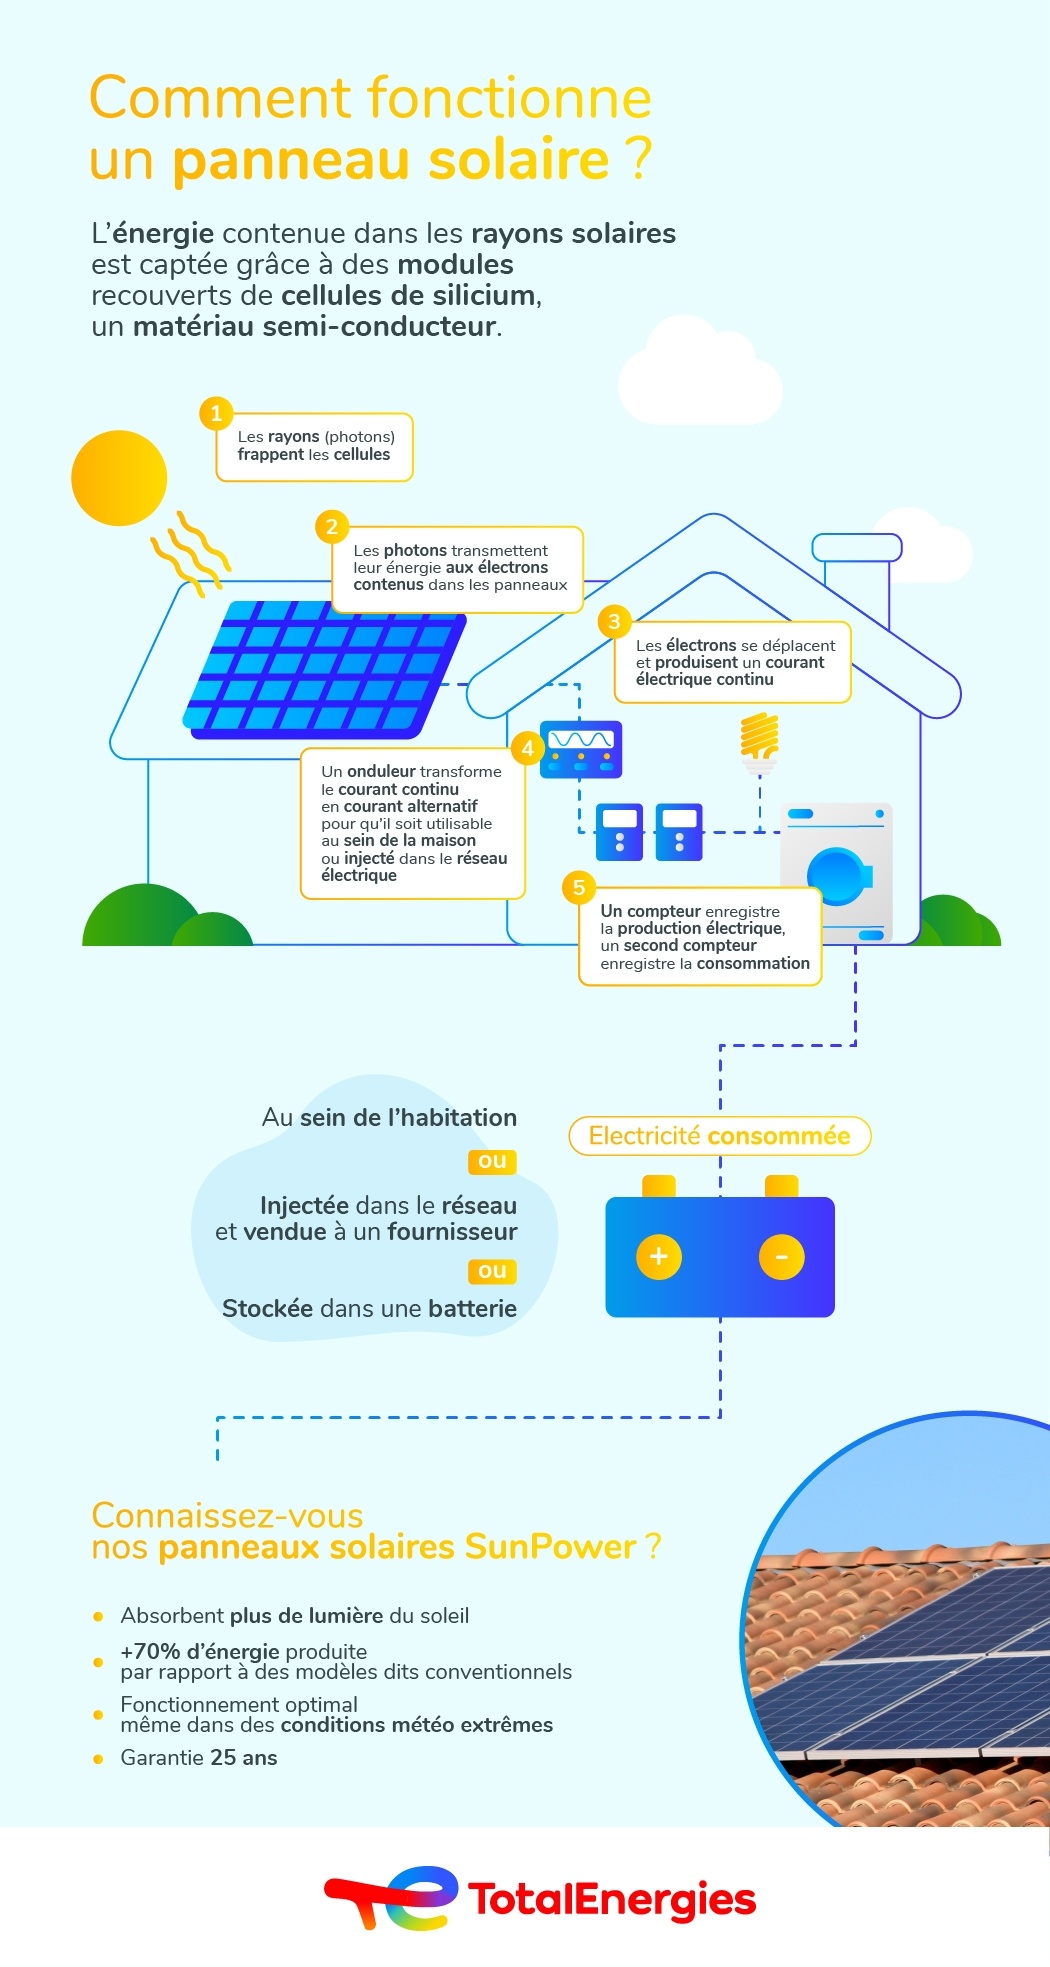 Comment fonctionne un panneau solaire ?